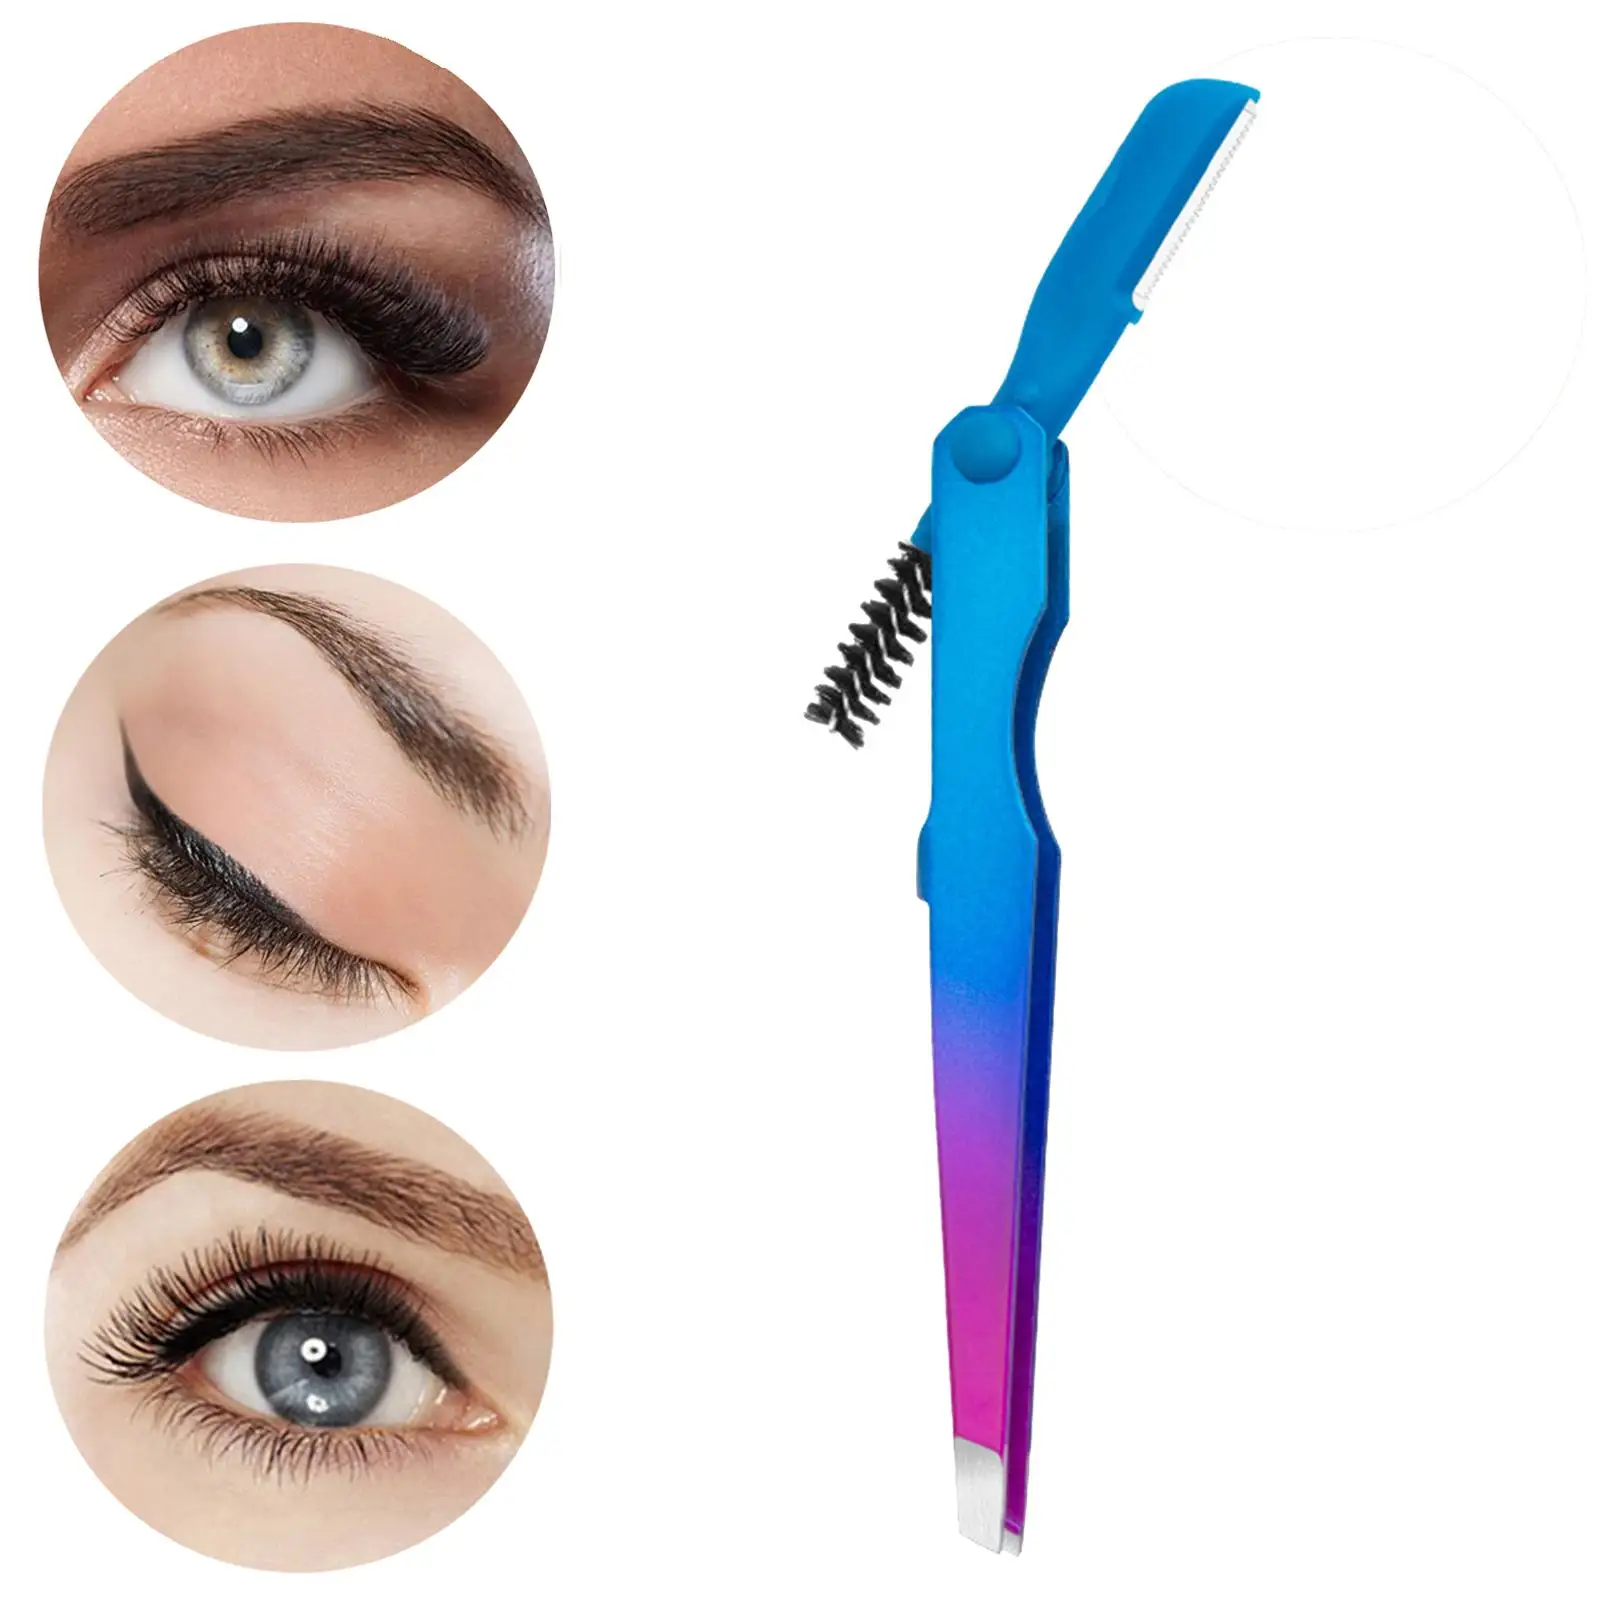 Eyebrow Tweezers Comfortable Grip Multipurpose Makeup Tools Eyebrow Trimmer